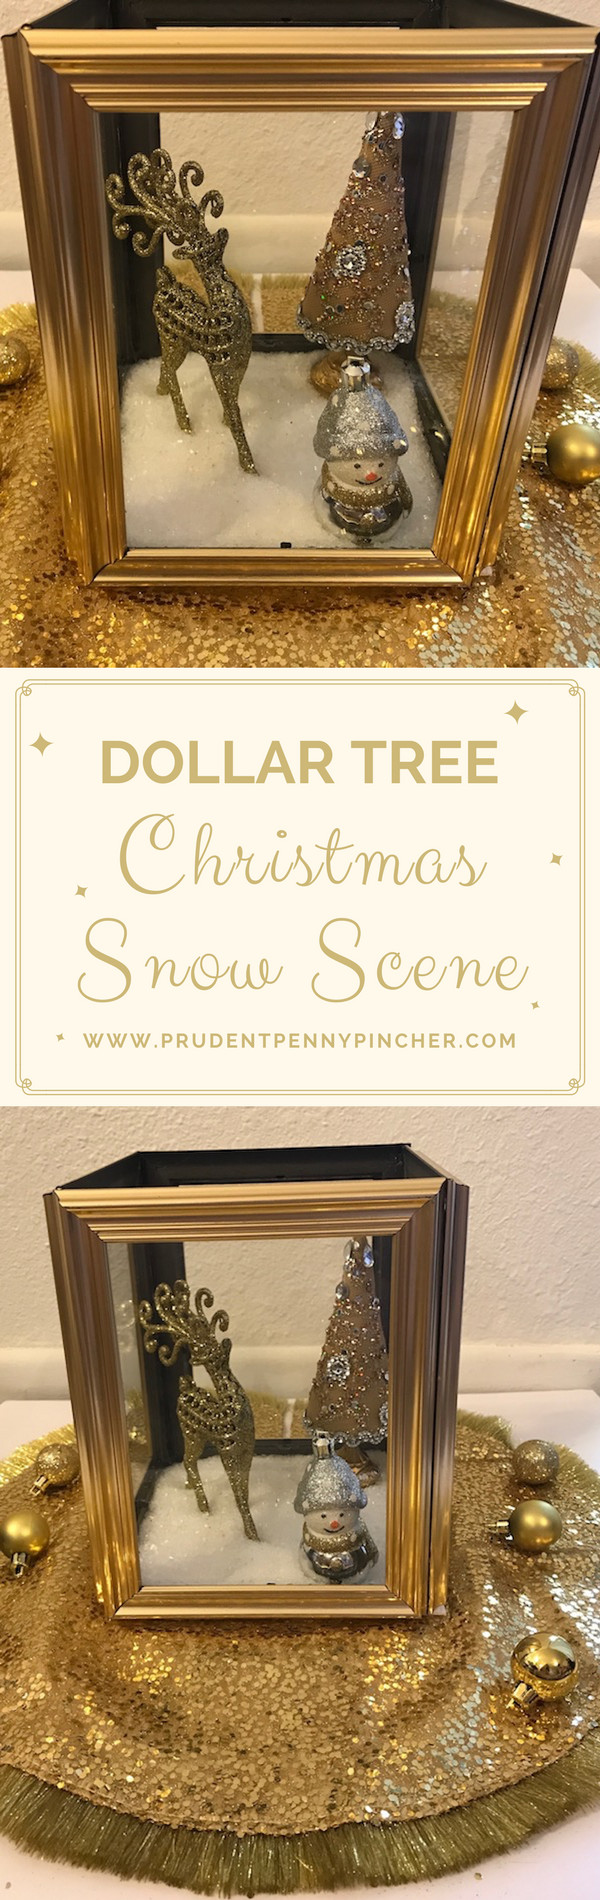 Dollar Tree Christmas DIY
 Dollar Tree Christmas Decor DIY Idea Prudent Penny Pincher